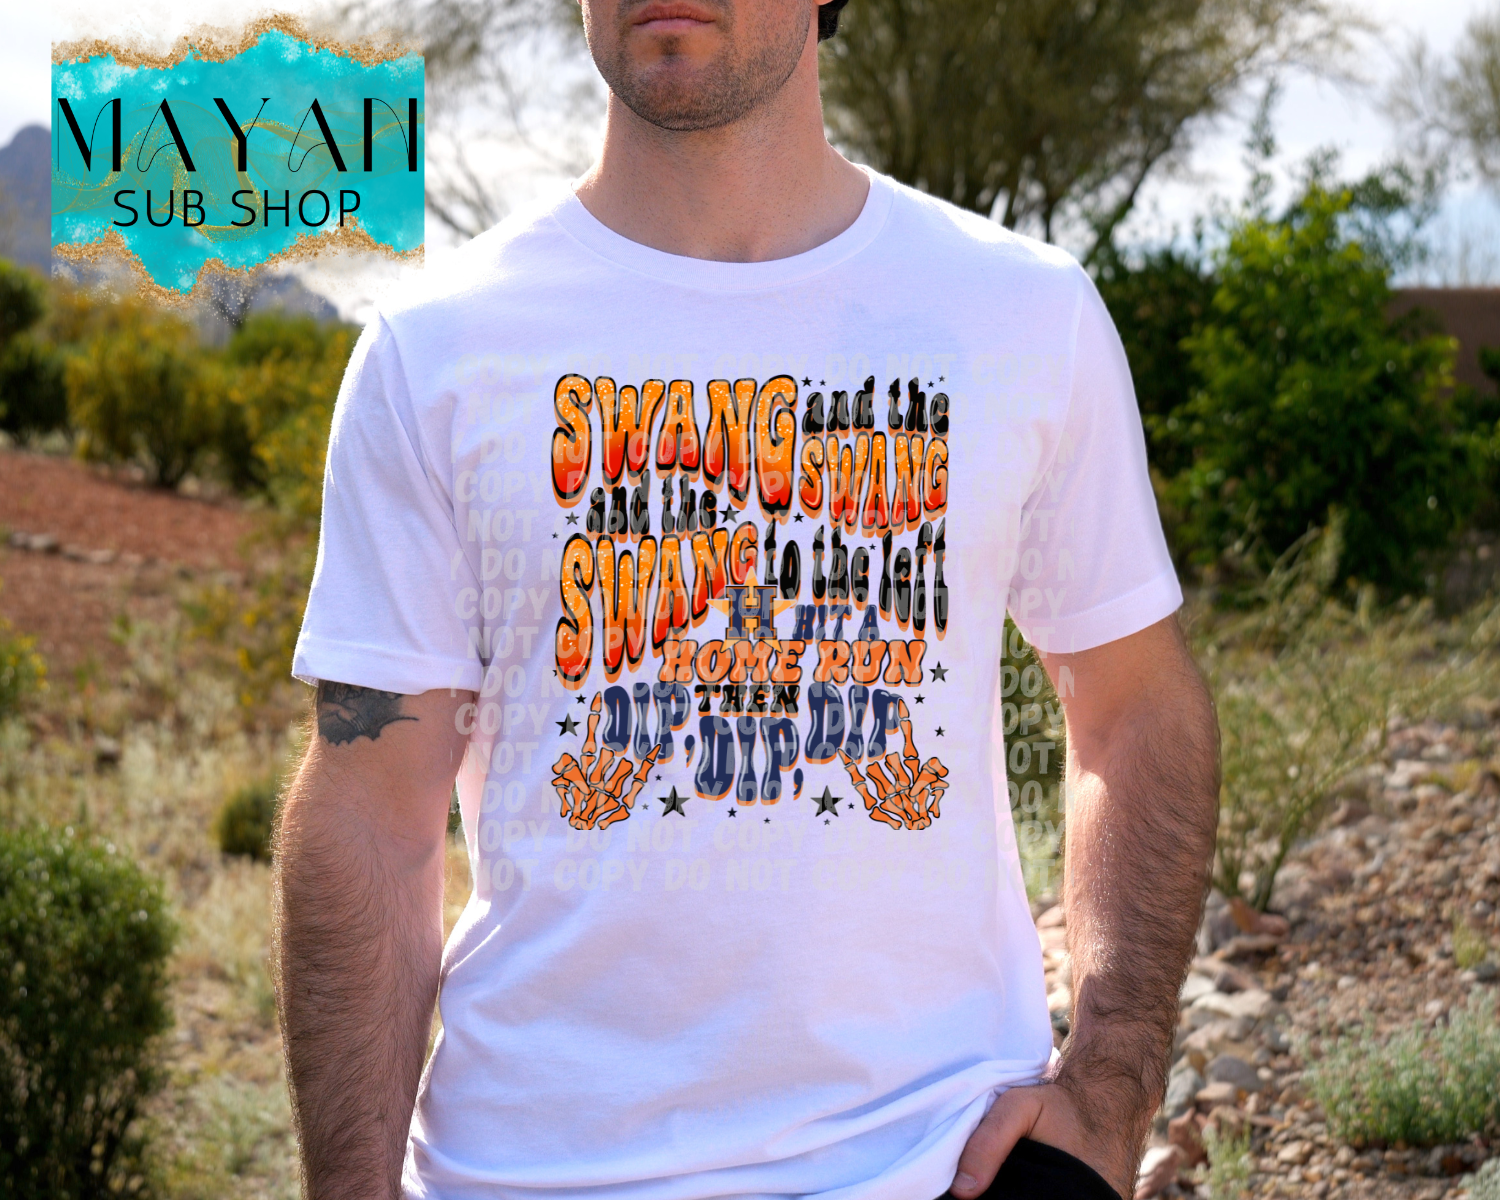 Swang and dip shirt. -Mayan Sub Shop